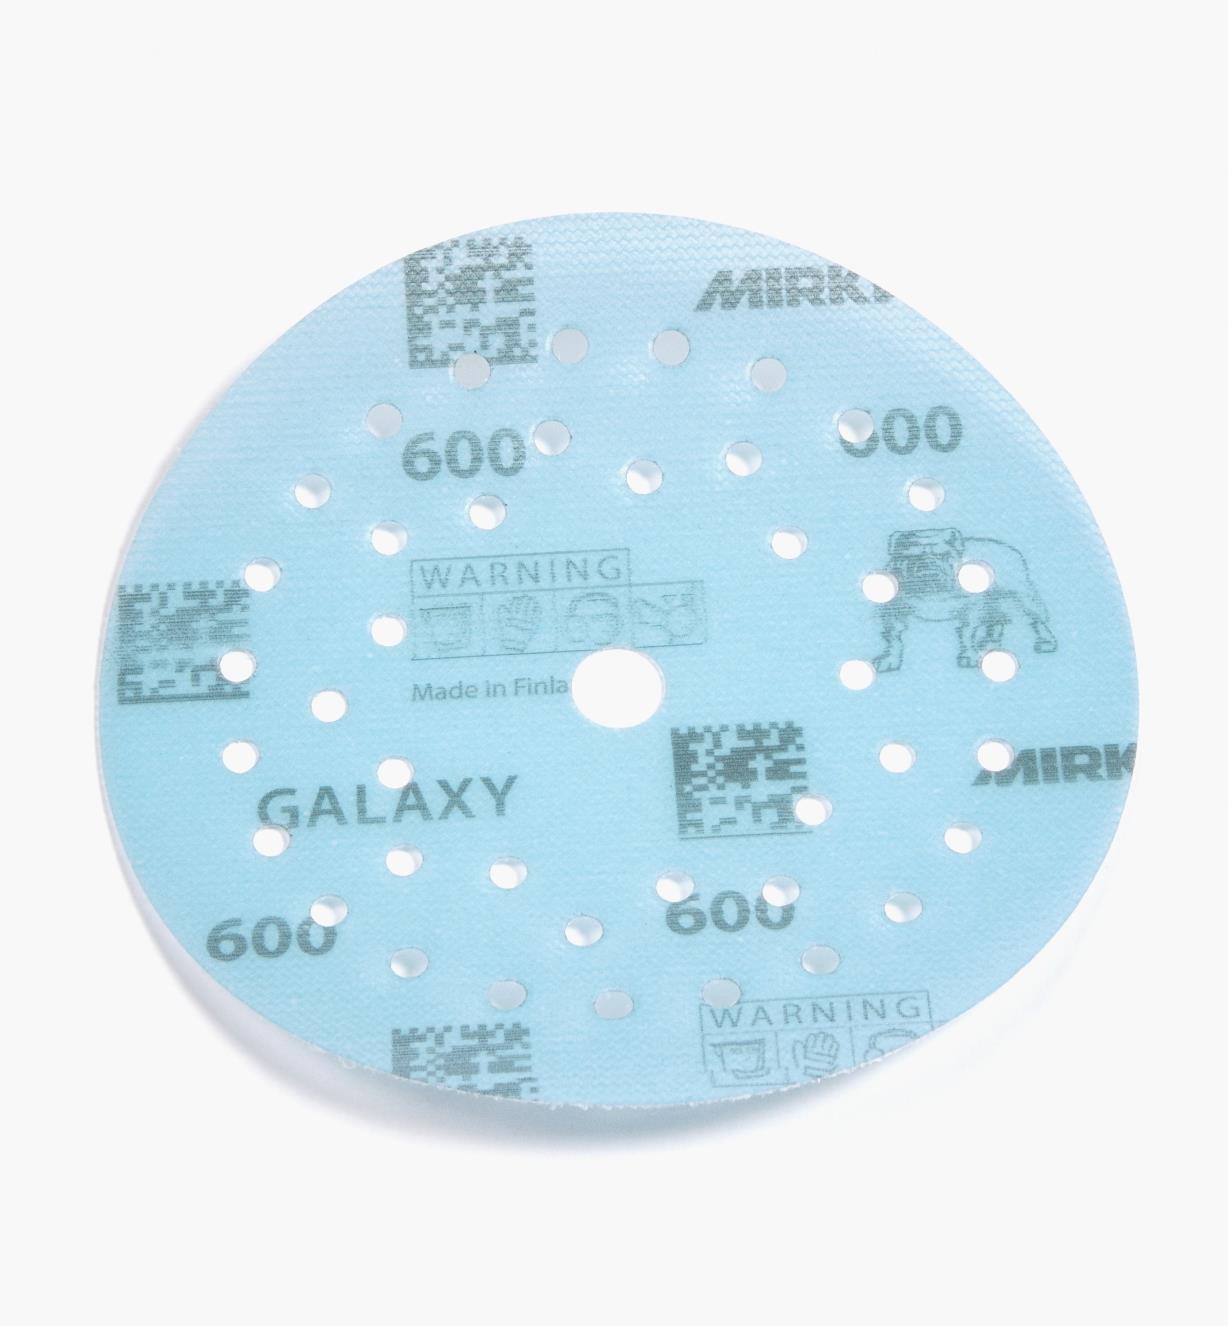 08K1352 - Disque abrasif autoagrippant Galaxy Multifit, 5 po, grain 600, l'unité